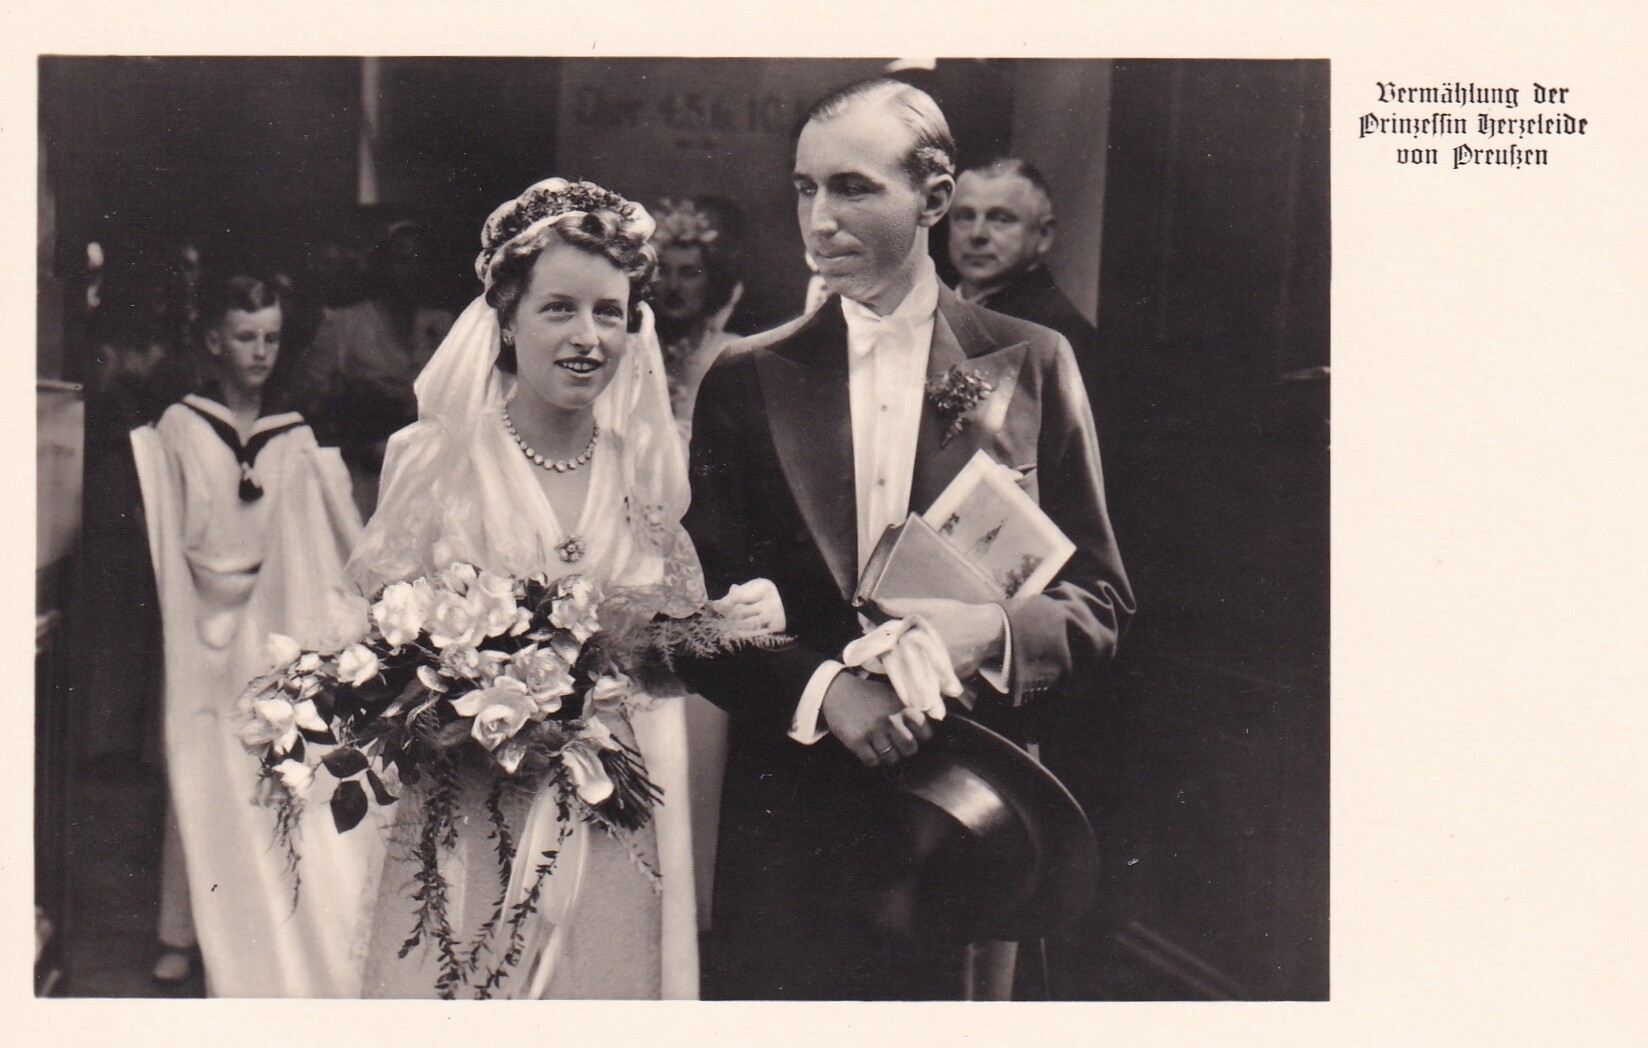 Bildpostkarte mit Foto von der Hochzeit der Herzeleide Prinzessin von Preußen, 1938 (Schloß Wernigerode GmbH RR-F)